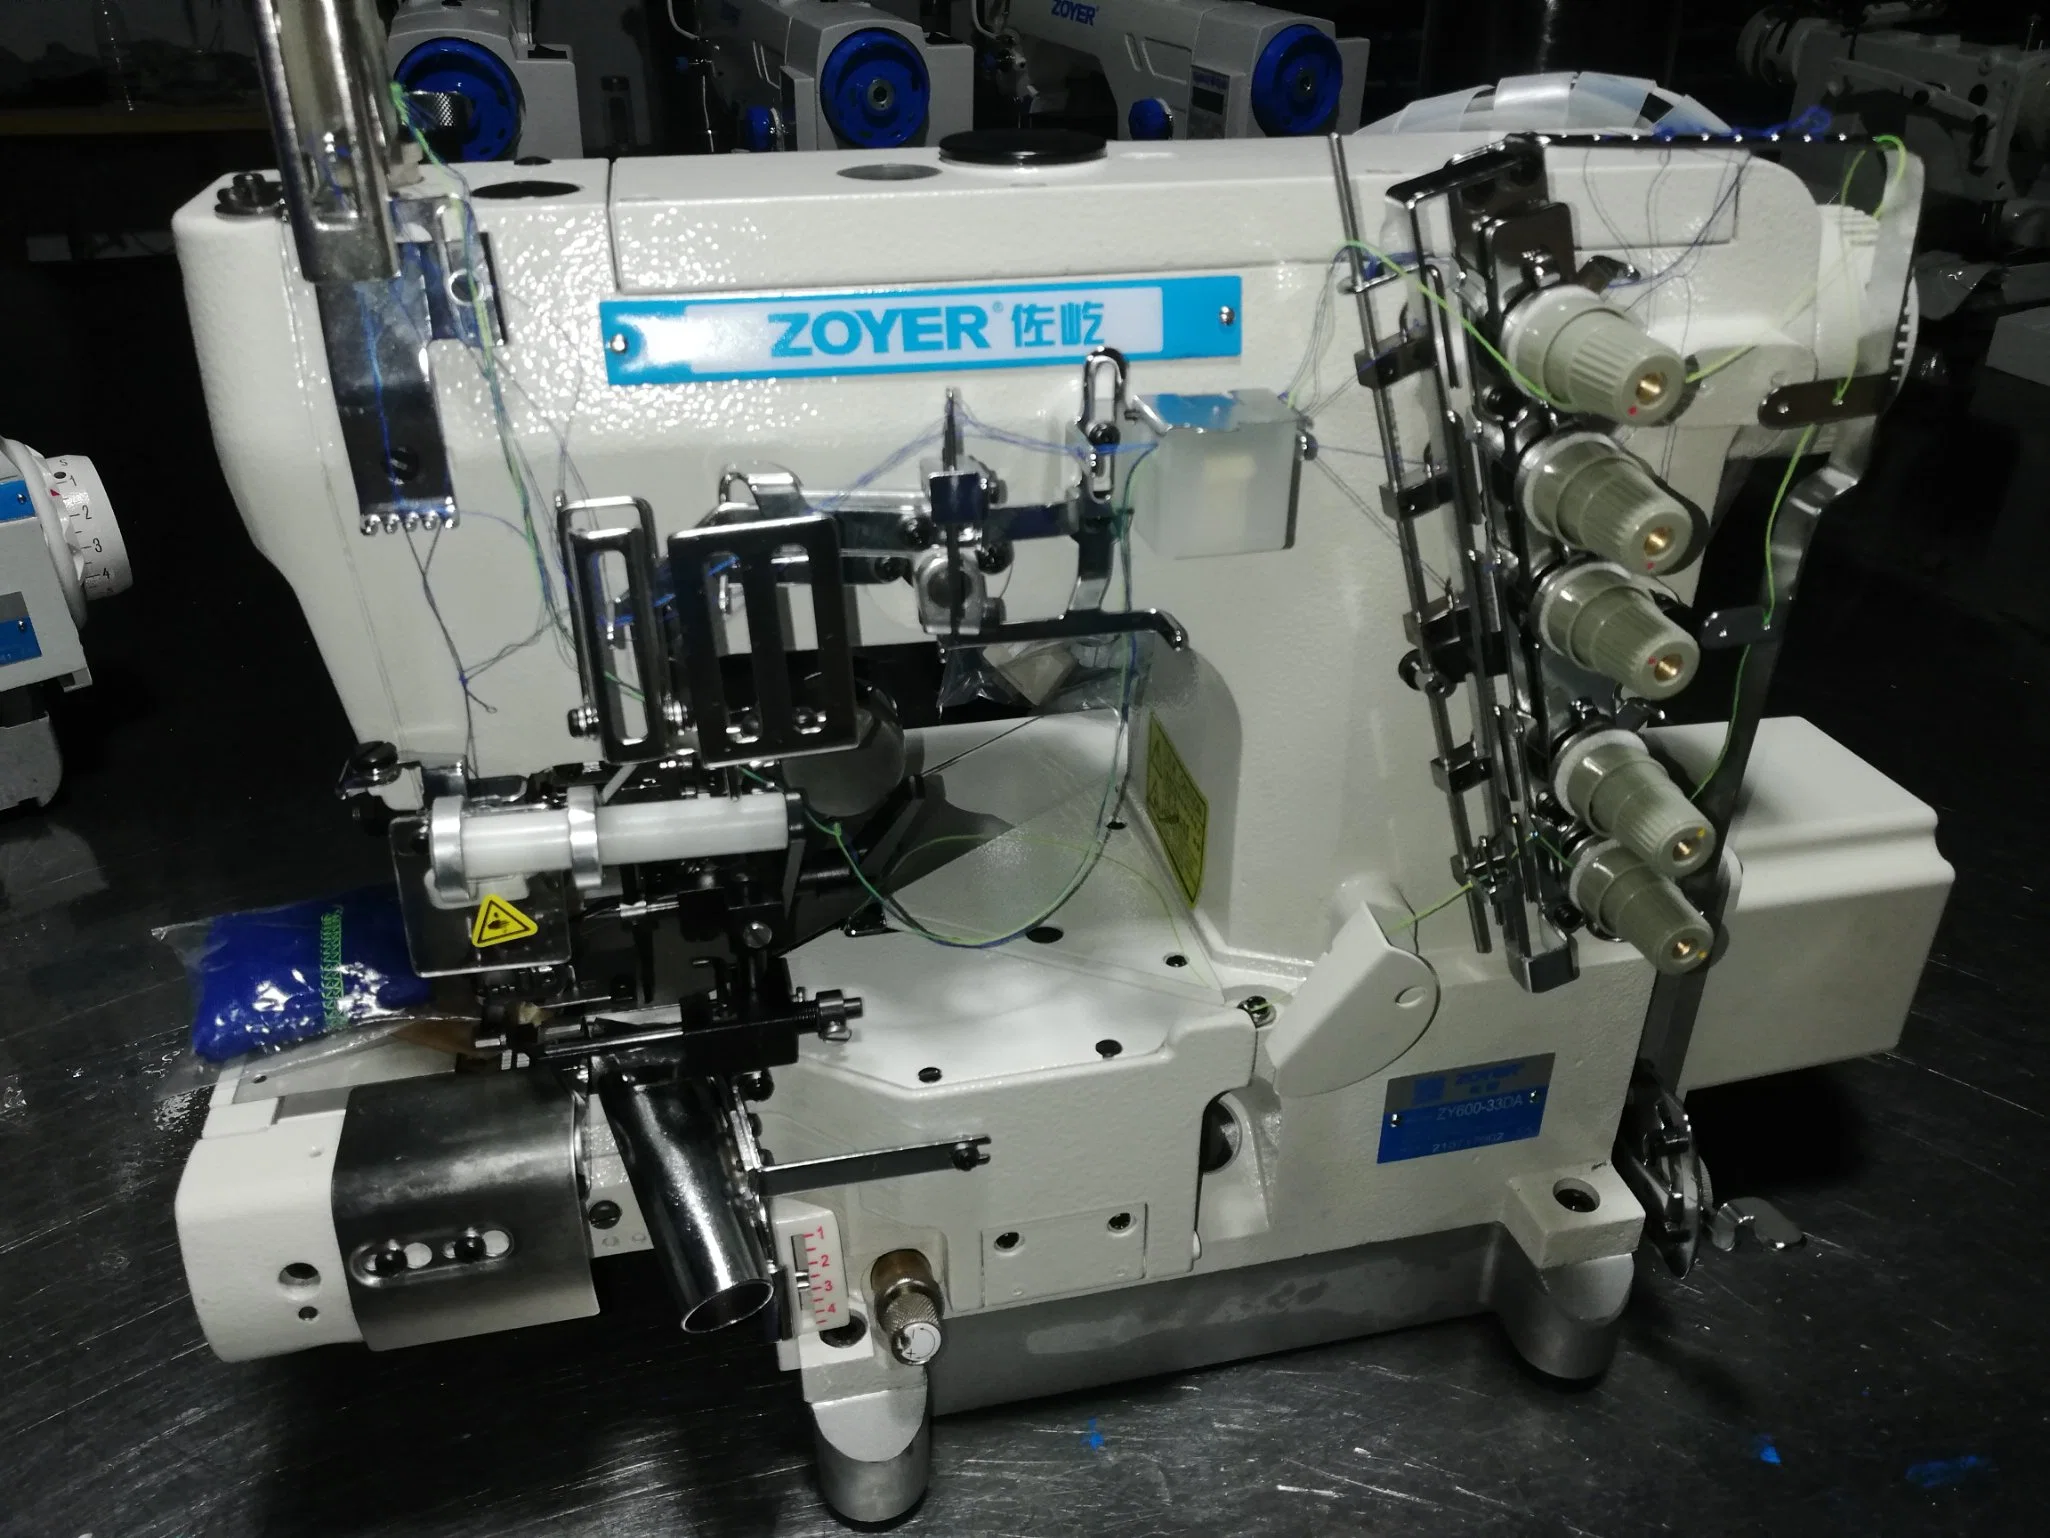 Zy600-33da Zoyer cama del cilindro de corte lateral derecho con la máquina de coser de bloqueo automático del controlador directo de barbero y dispositivo elástico